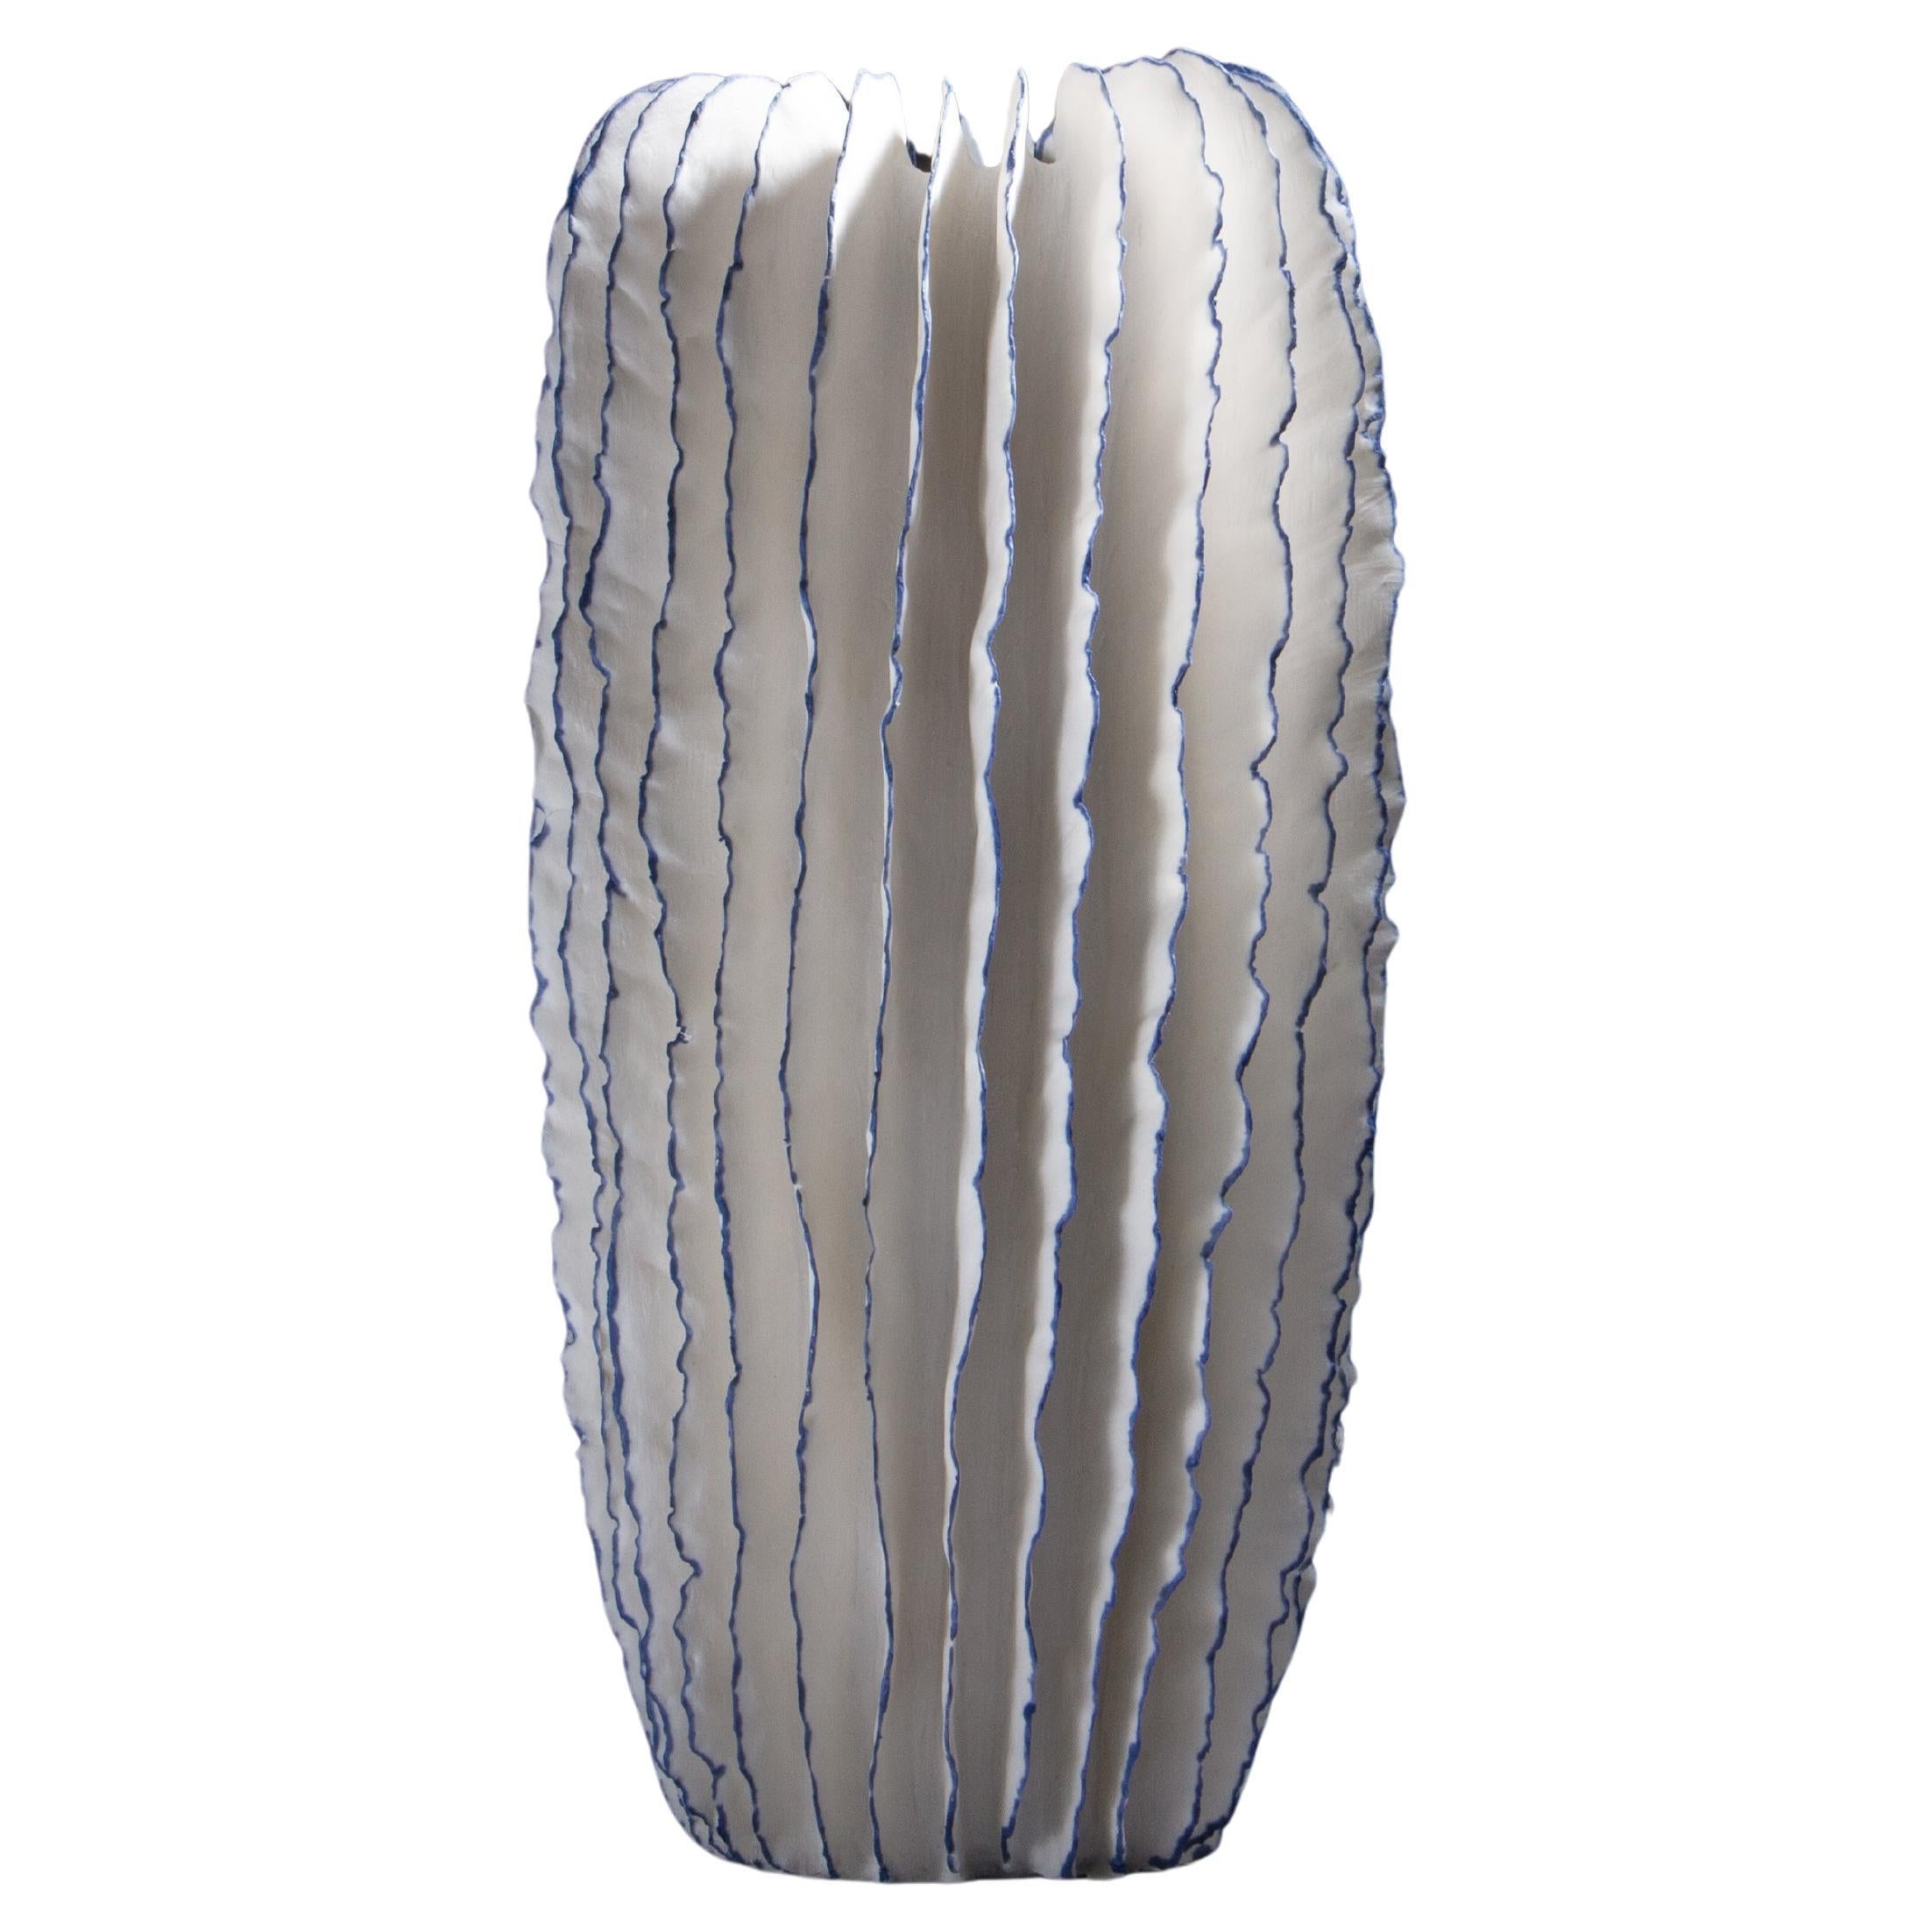 Ruffled Blue and White Cactus-ähnliche Keramikskulptur, Sandra Davolio